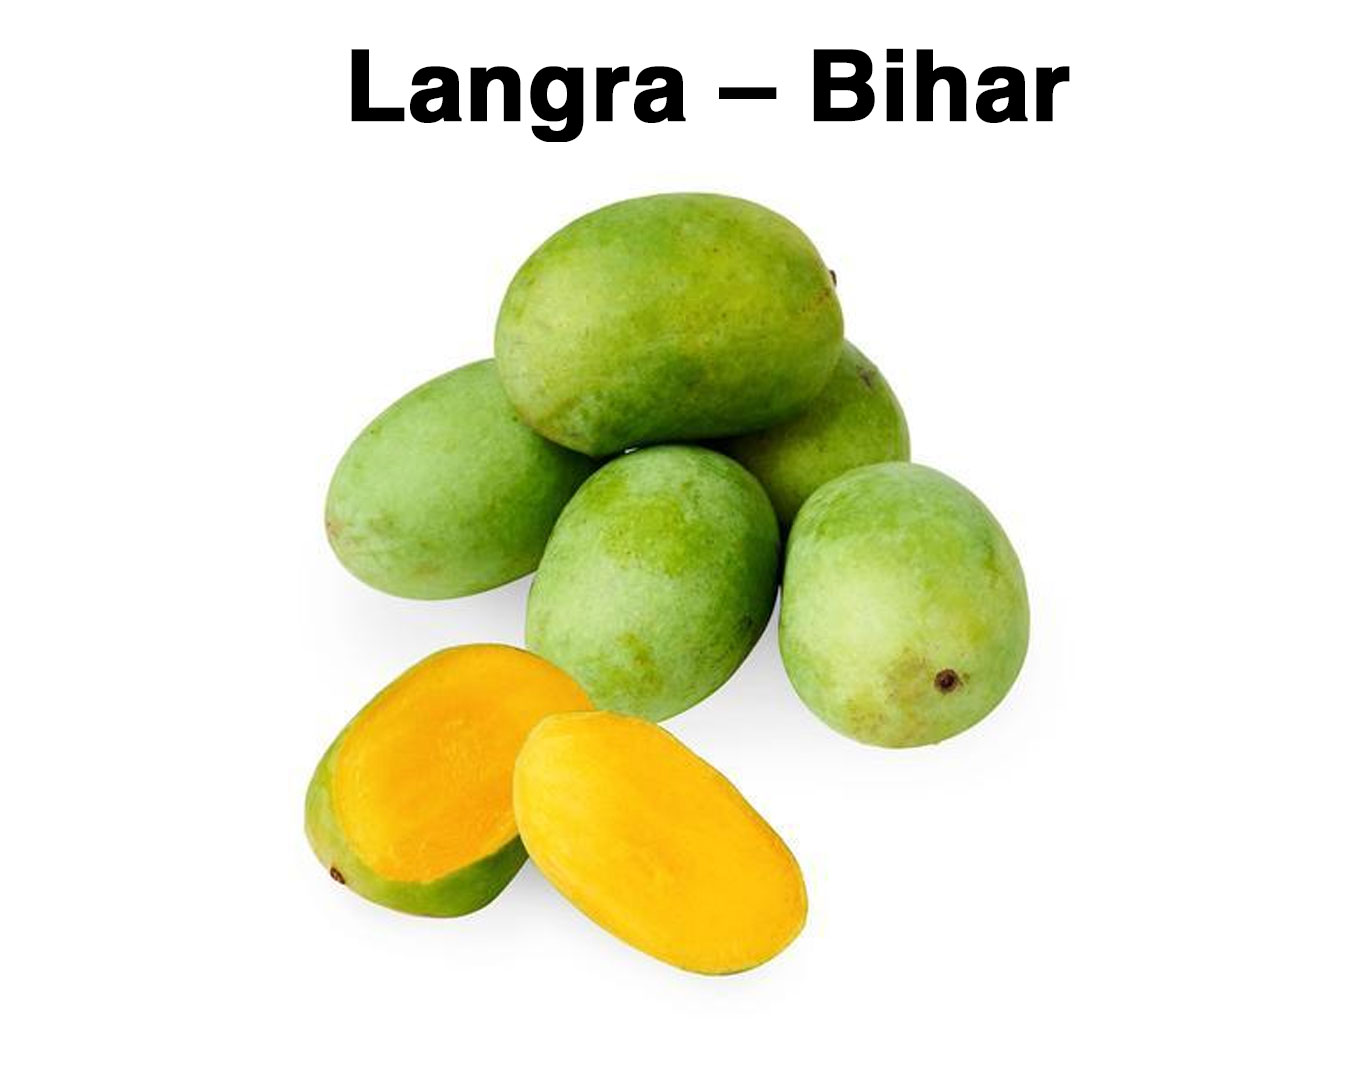 Varieties of Mangoes - Langra – Bihar